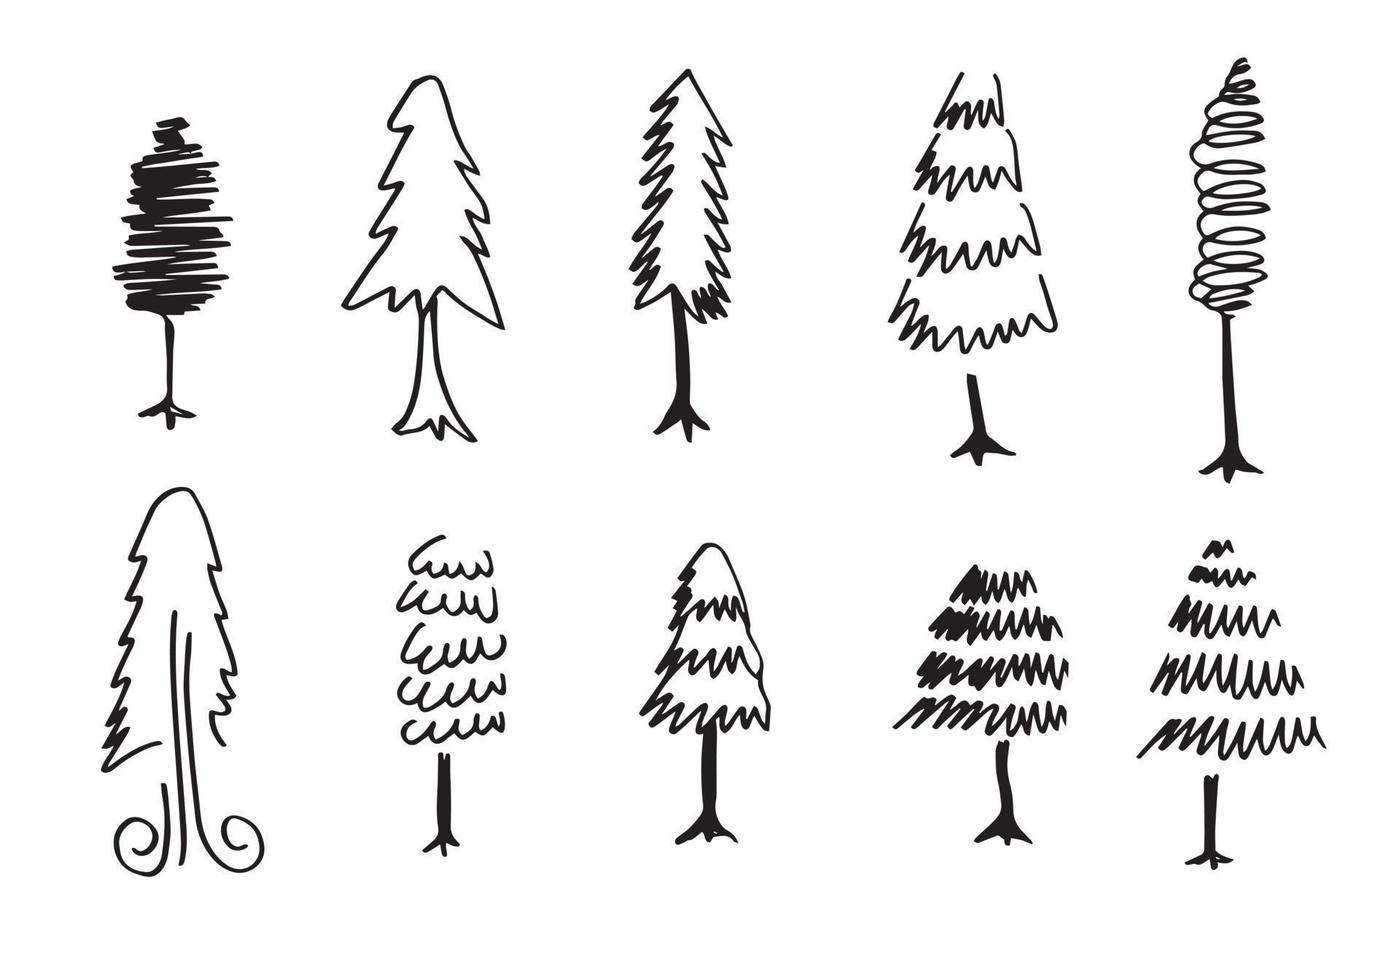 doodle park forest conifer siluetas abstractas árboles delineados en conjunto de colección de color negro vector